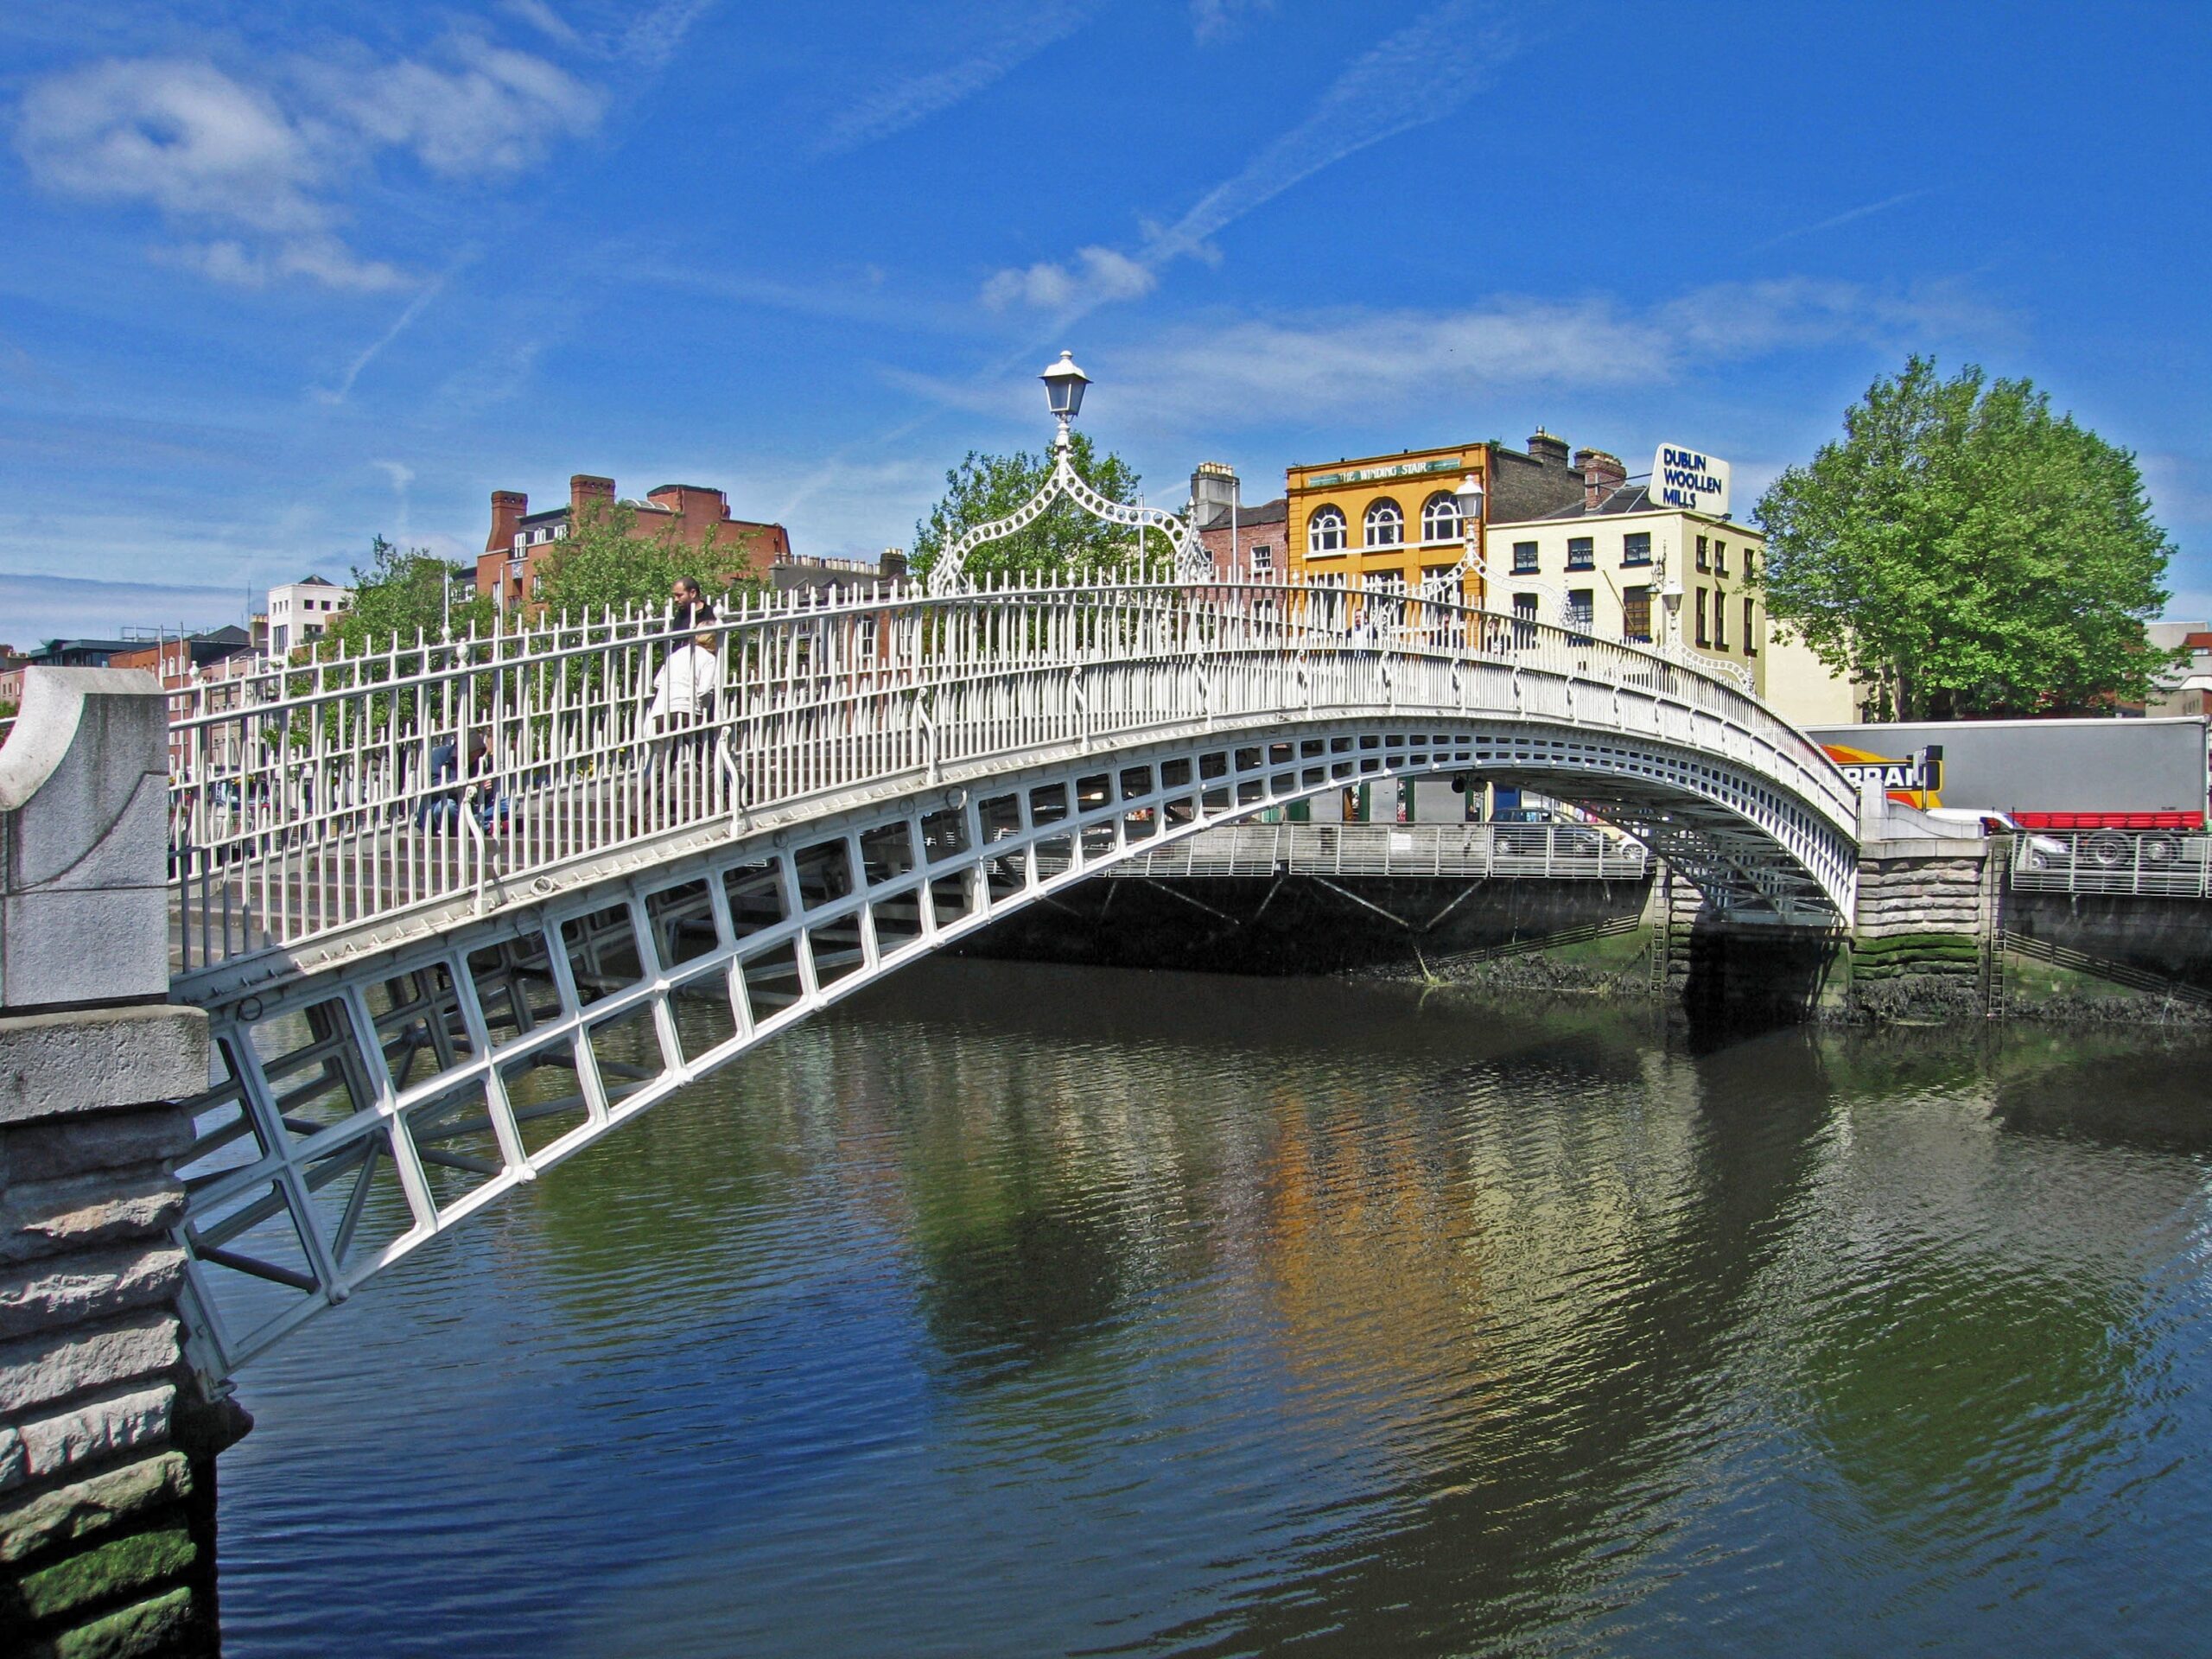 Travel Talk Tuesday: August 3, 2021 – Dublin, Ireland